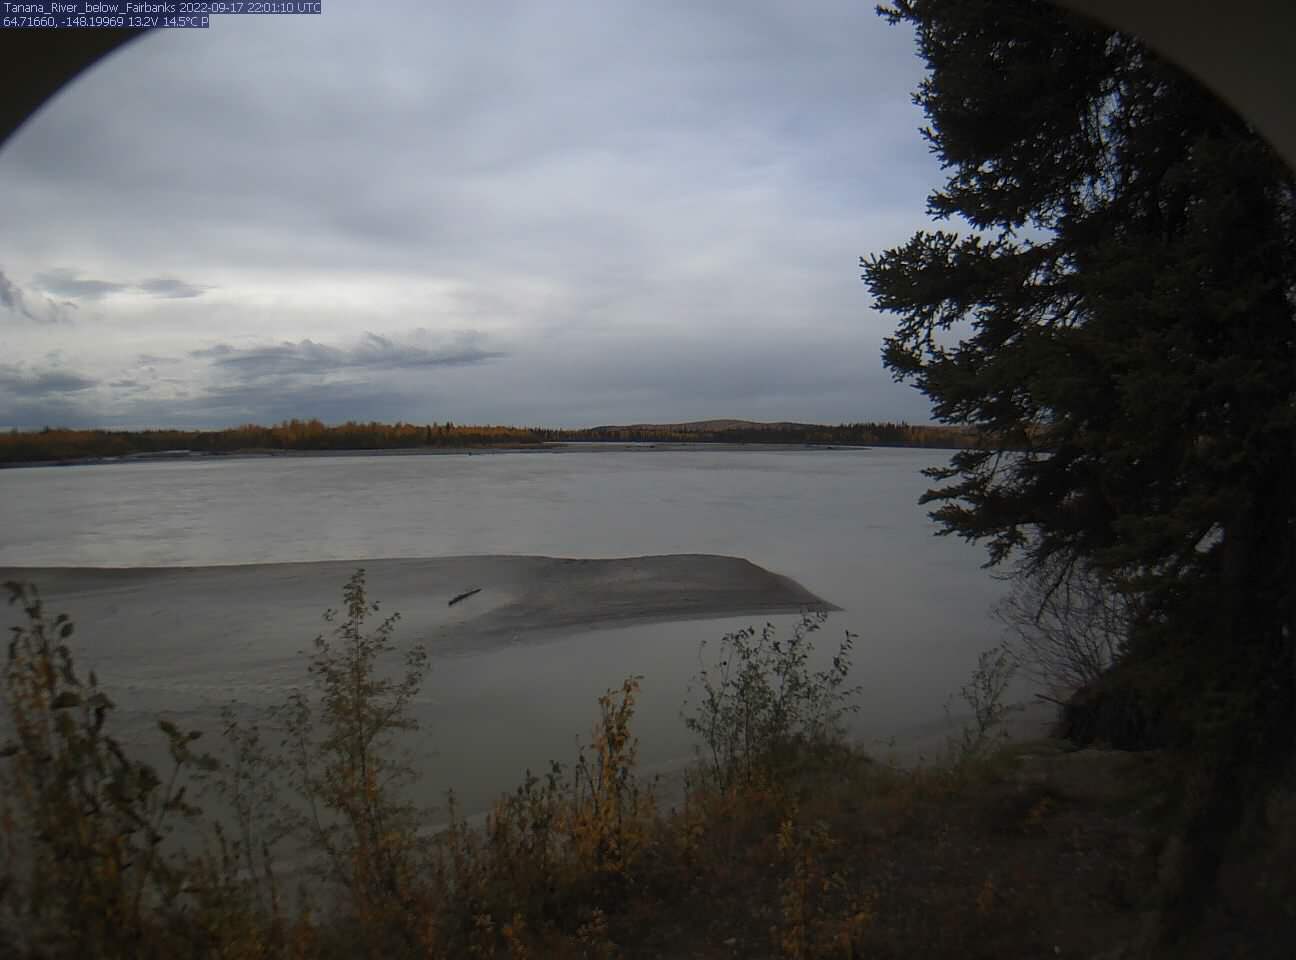 Tanana_River_below_Fairbanks_20220917220111.jpg